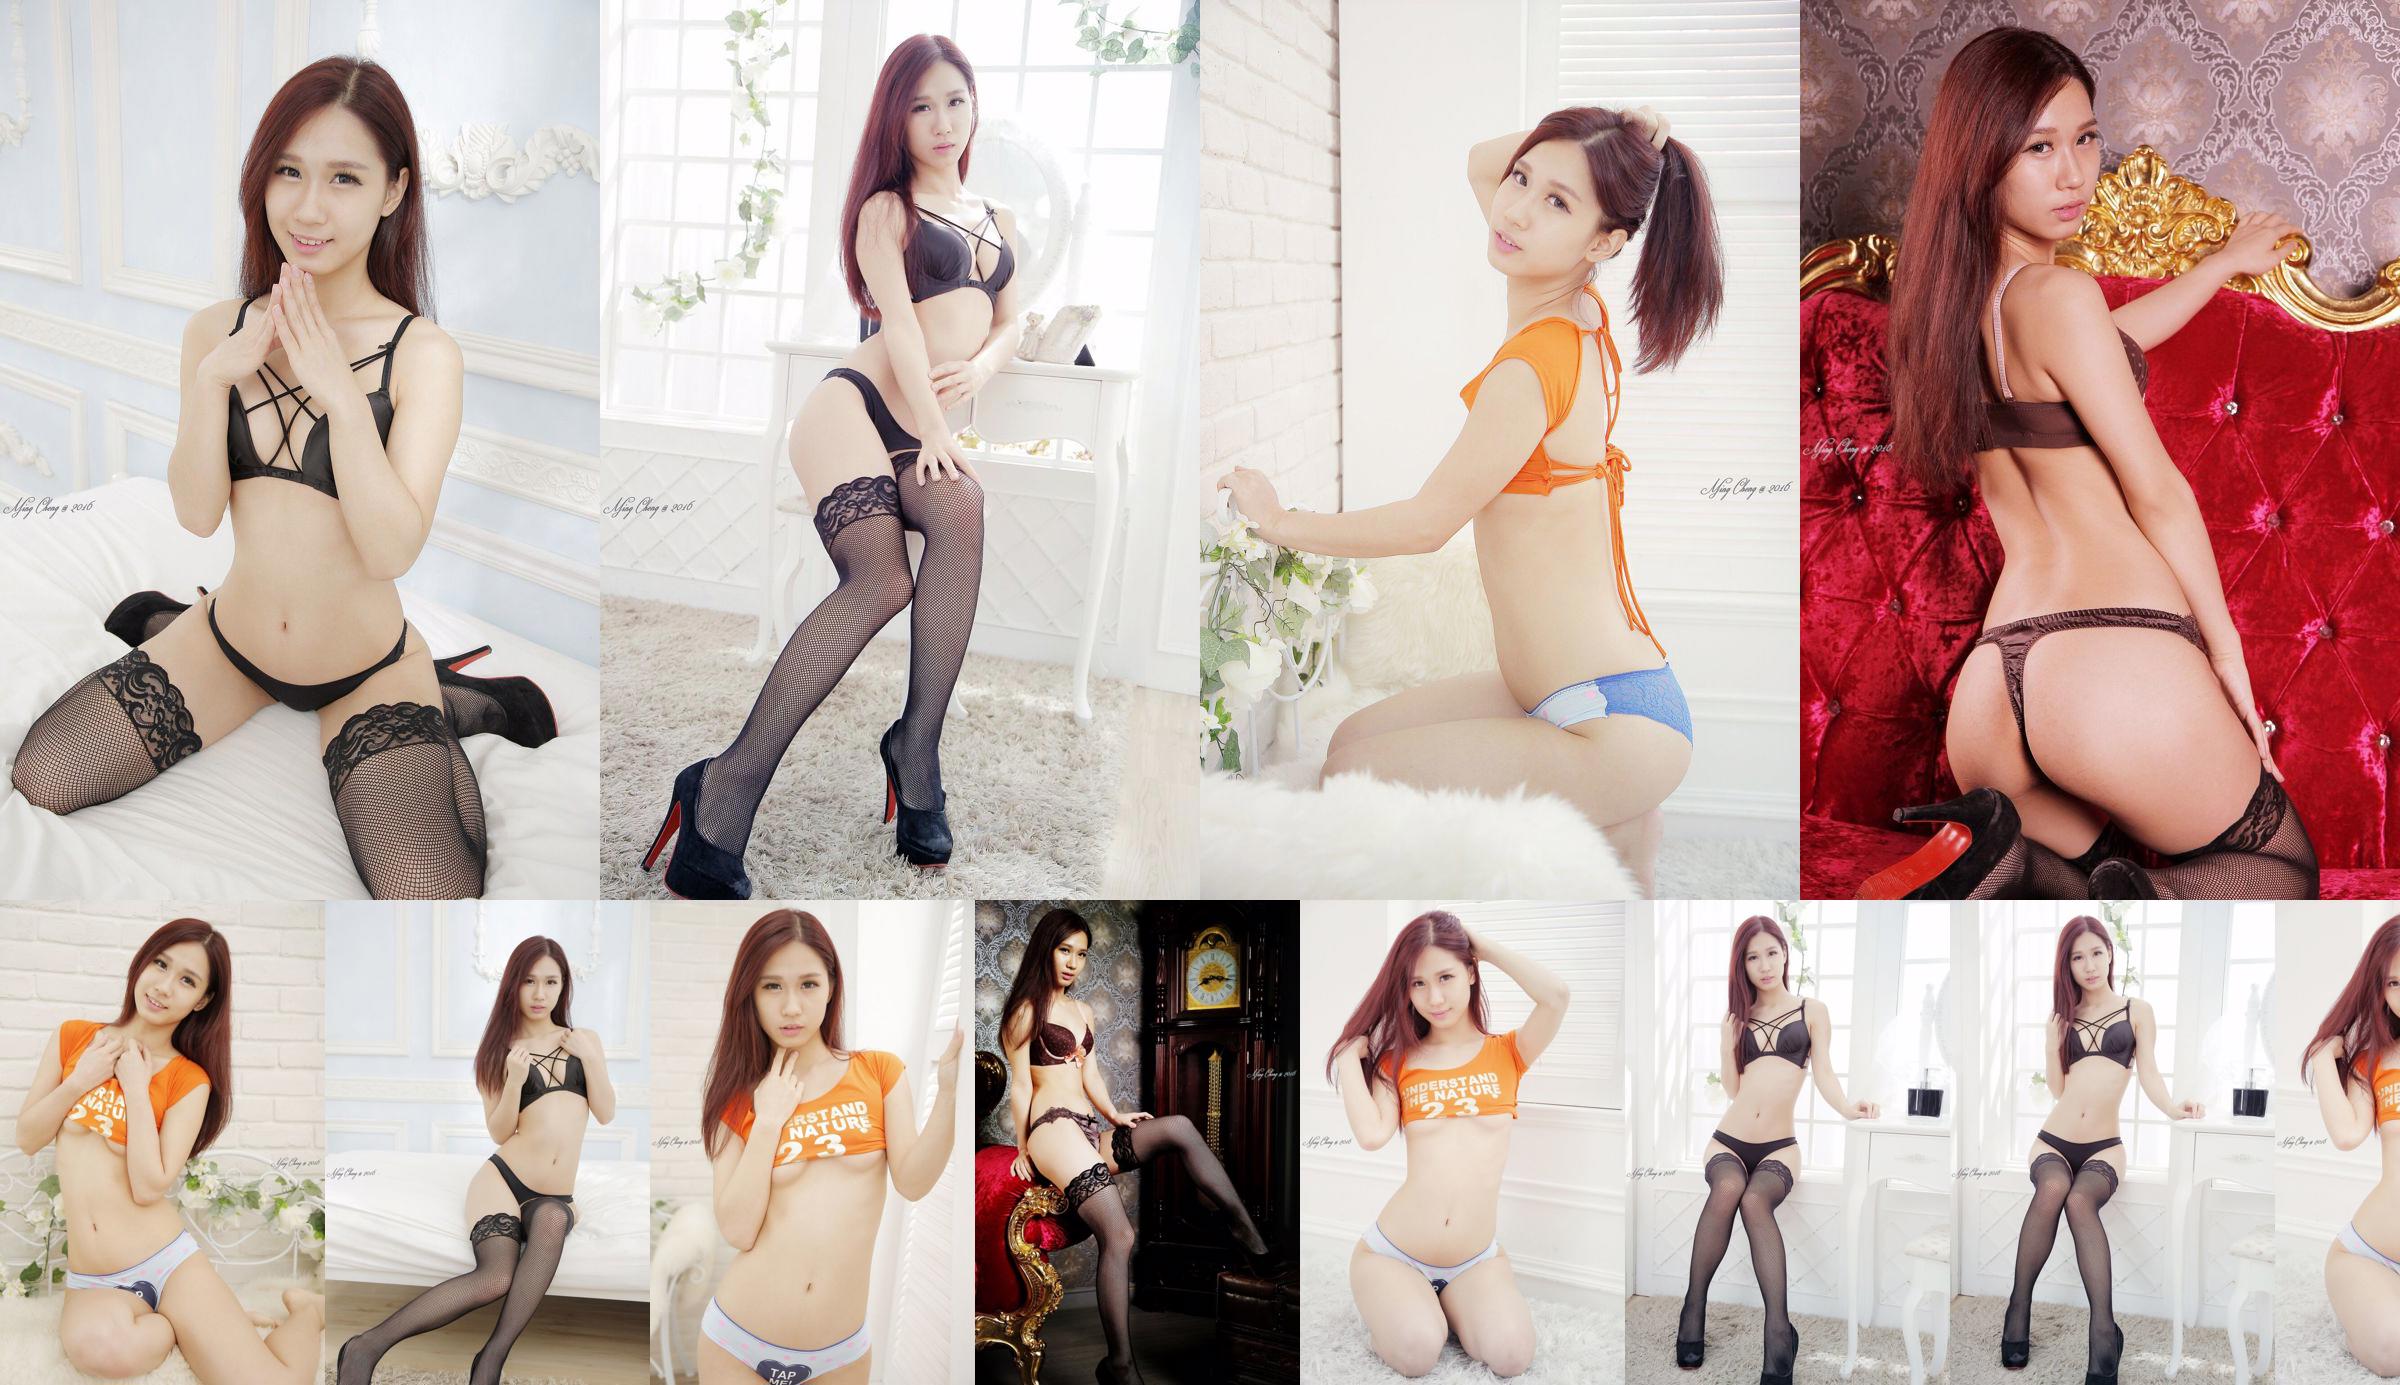 [Taiwan Zhengmei] Belle underwear studio shooting No.19aafd Page 17